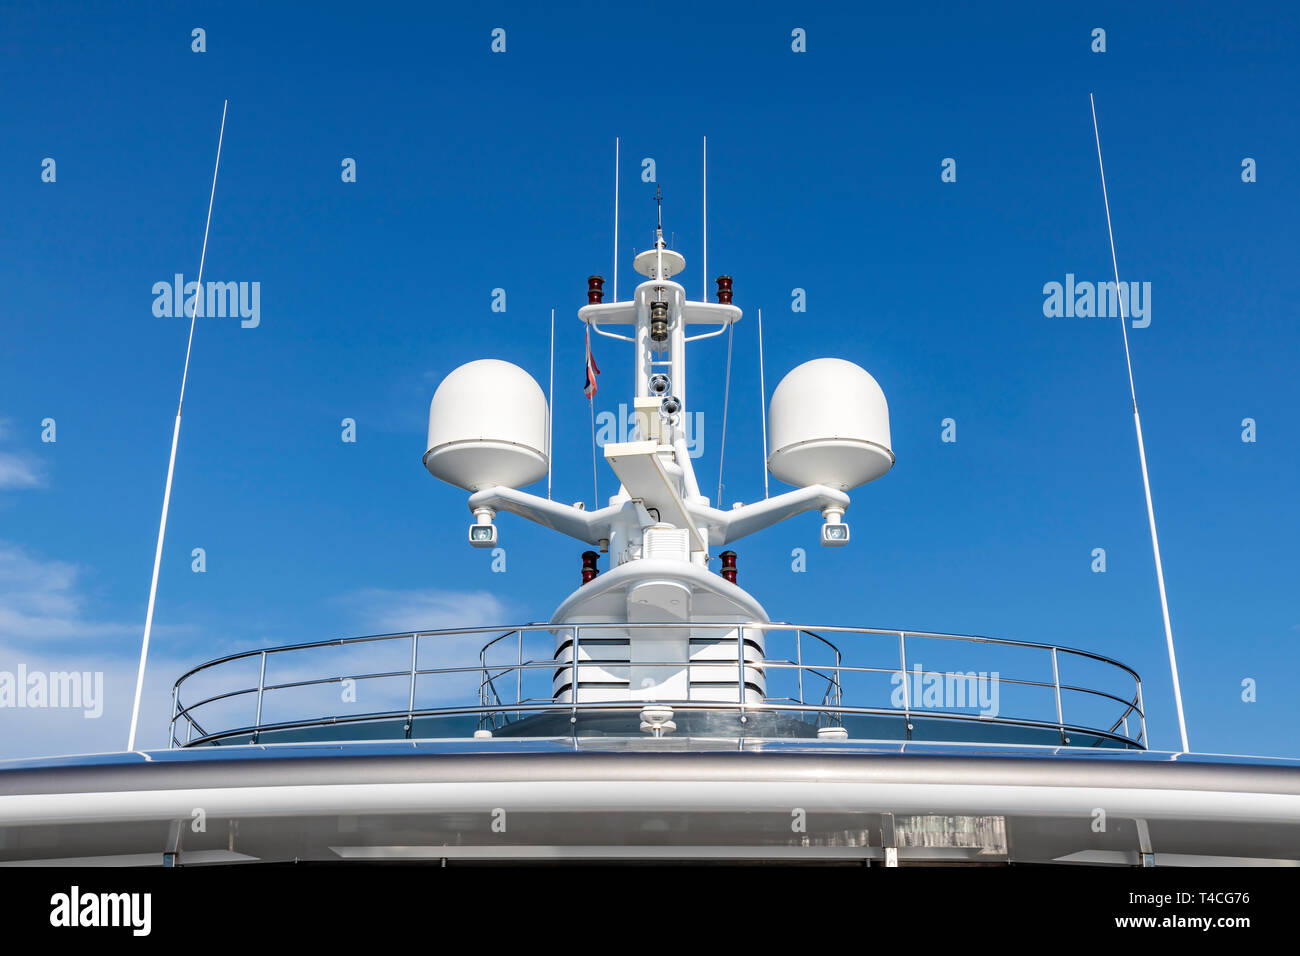 Le antenne di comunicazione con apparecchiature di navigazione, radar sul ponte superiore del bianco di lusso la nave di crociera. Vi è una bandiera tailandese con cielo blu chiaro mi Foto Stock